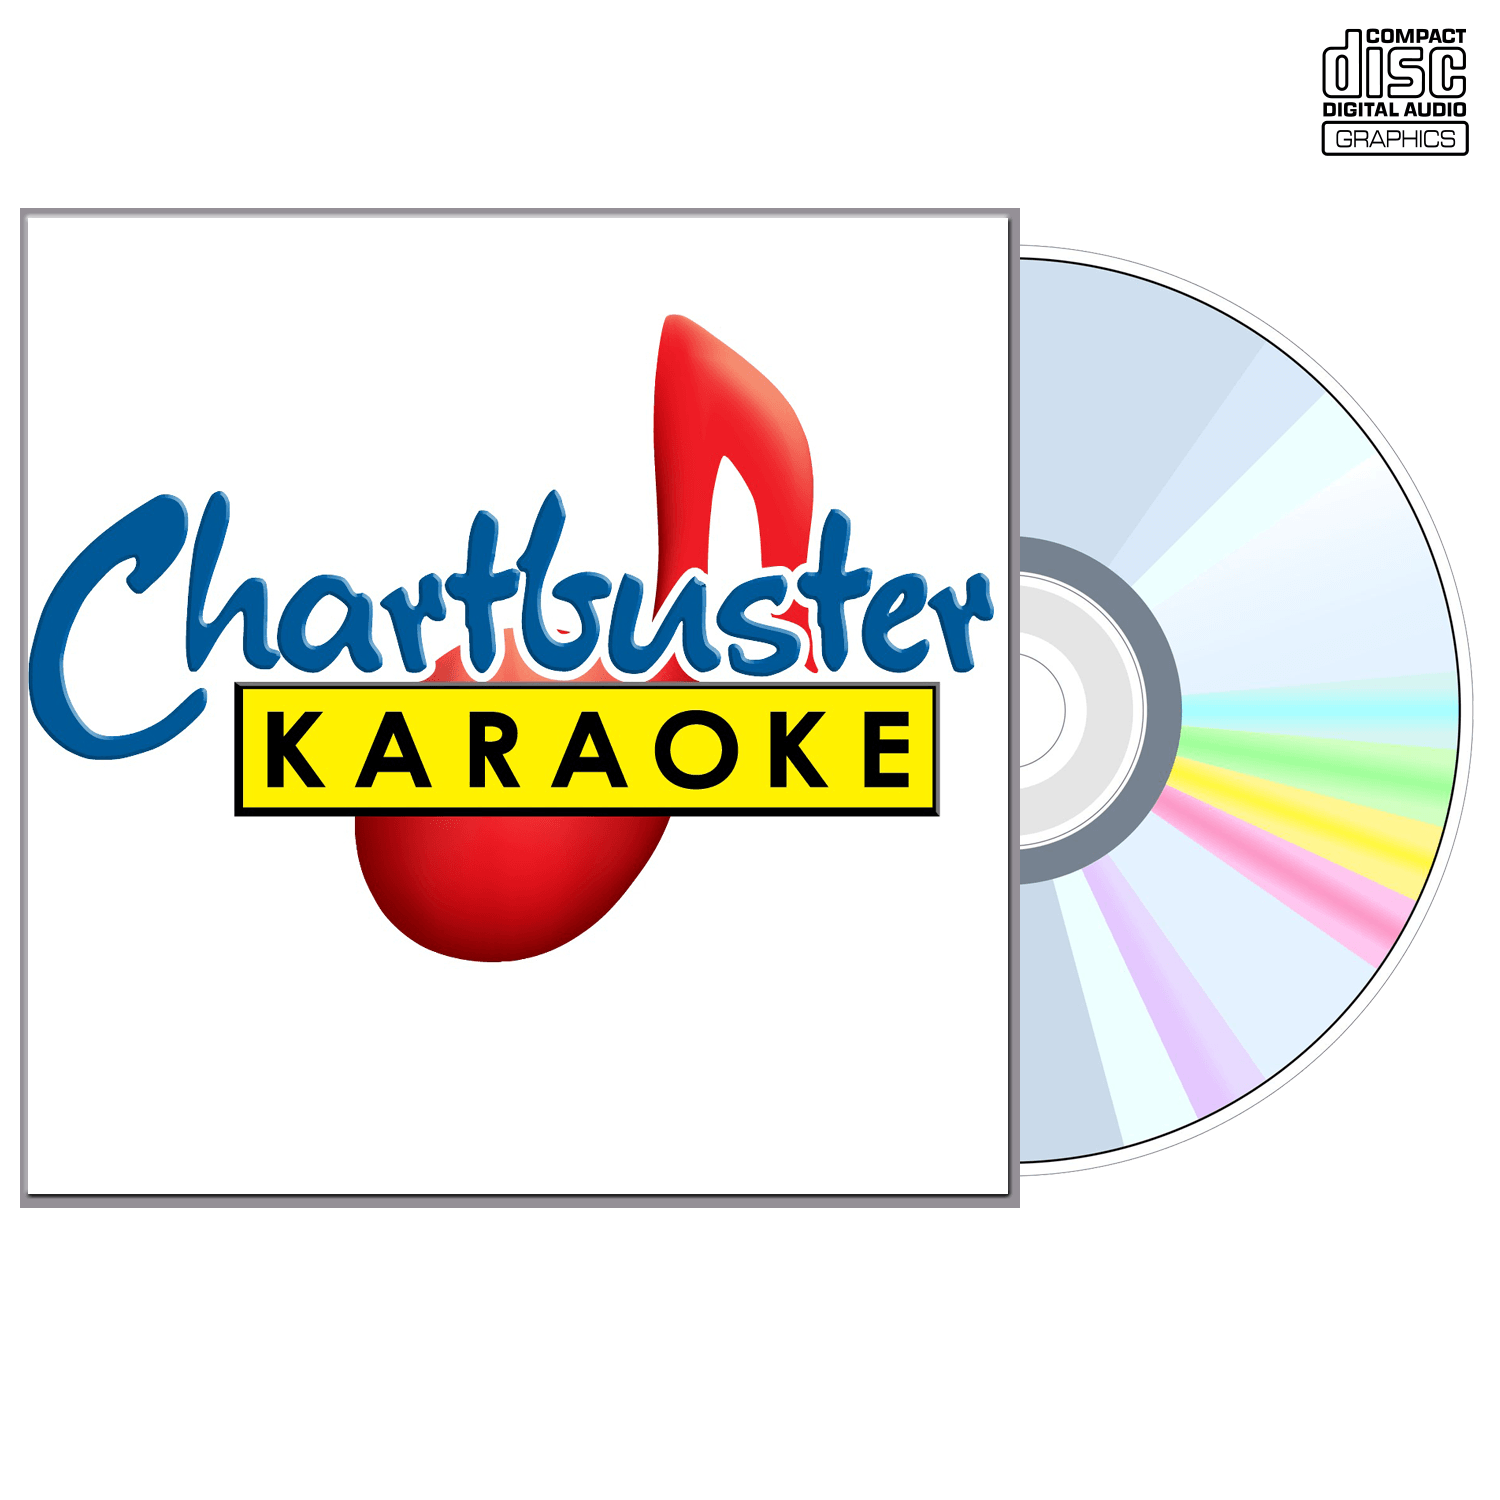 Rick Trevino - CD+G - Chartbuster Karaoke - Karaoke Home Entertainment